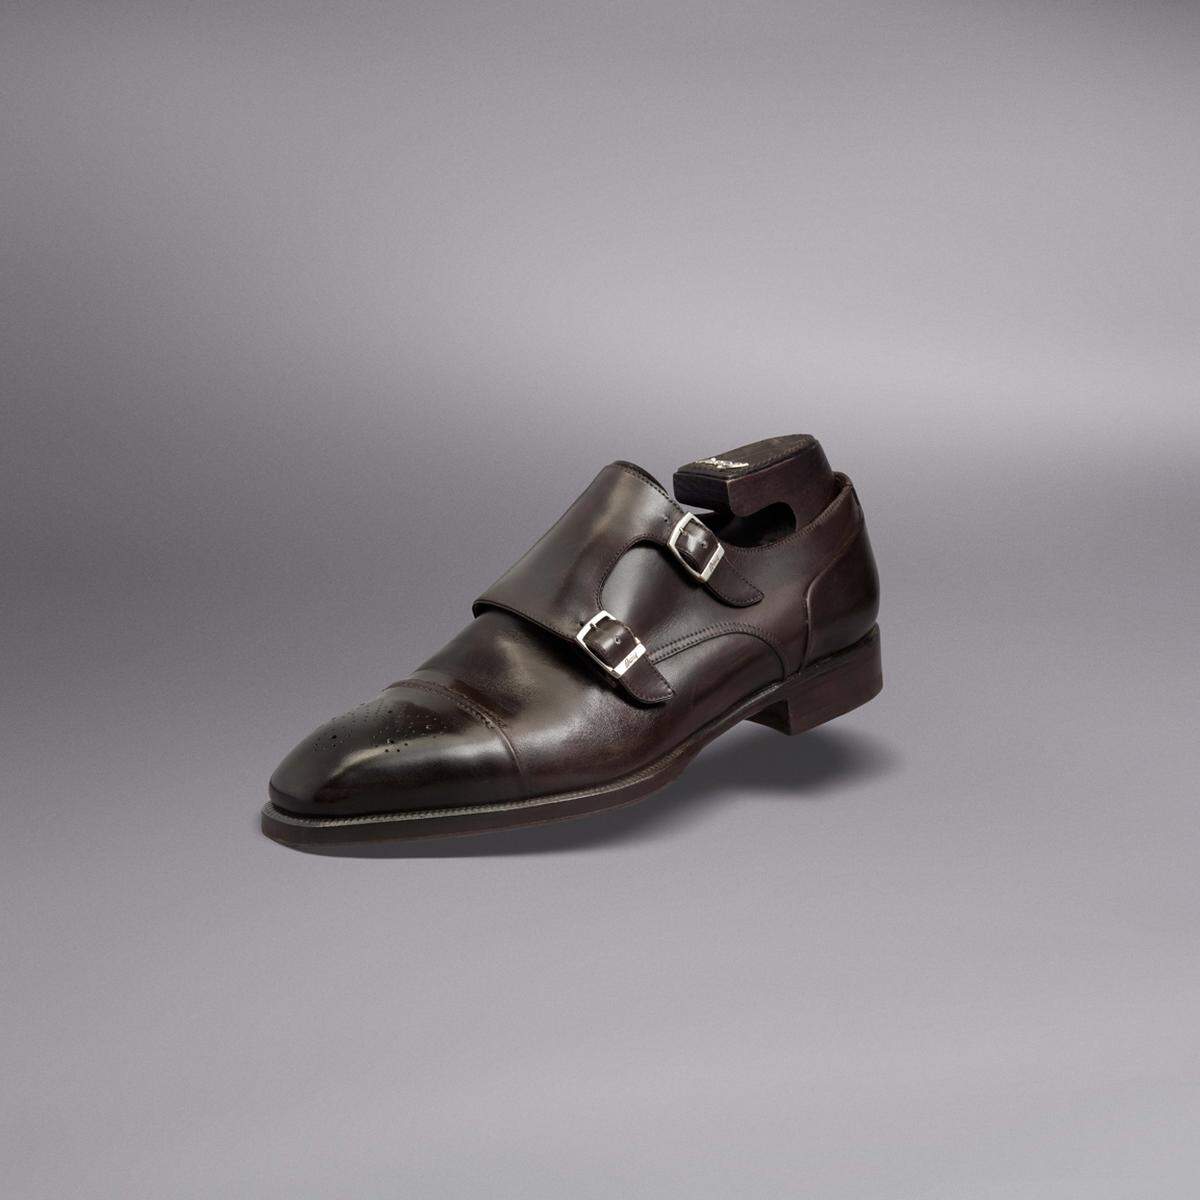 Klassische Schuhe von Brioni können dem luxusbewussten Vater nur gefallen.